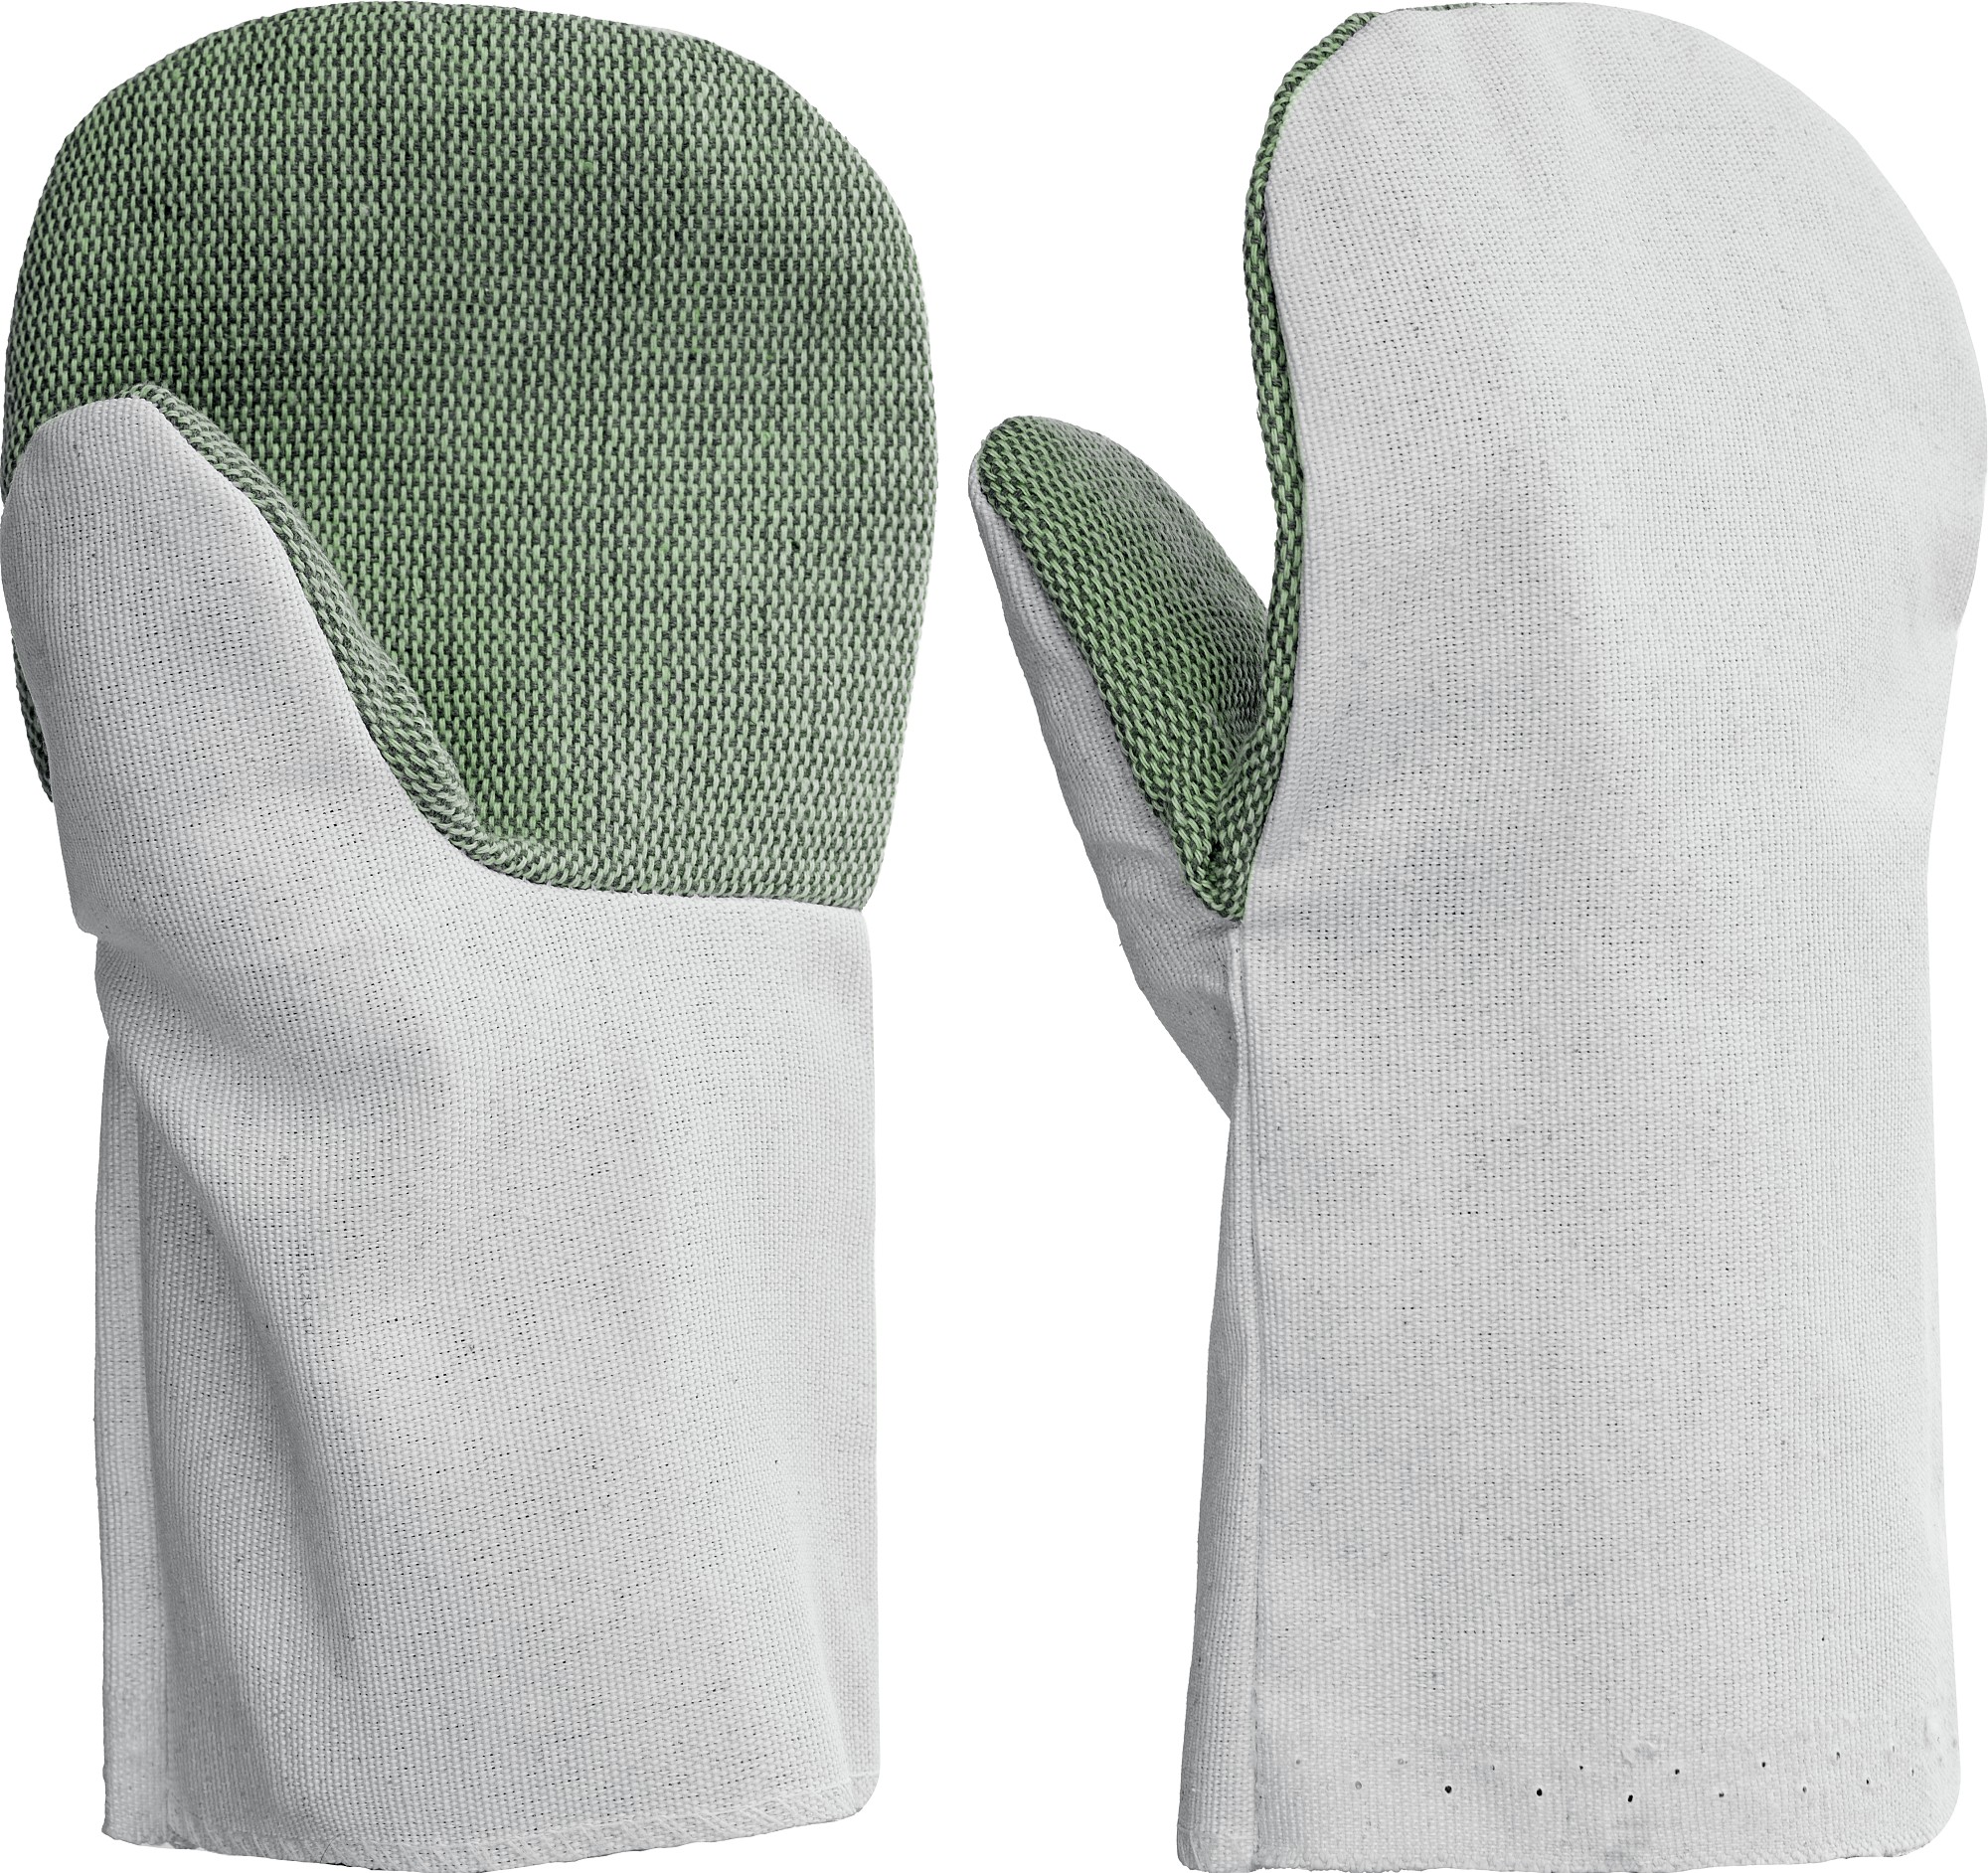 СИБИН от мех. воздействий, с брезентовым наладонником, XL, хлопчатобумажные рукавицы (11421)